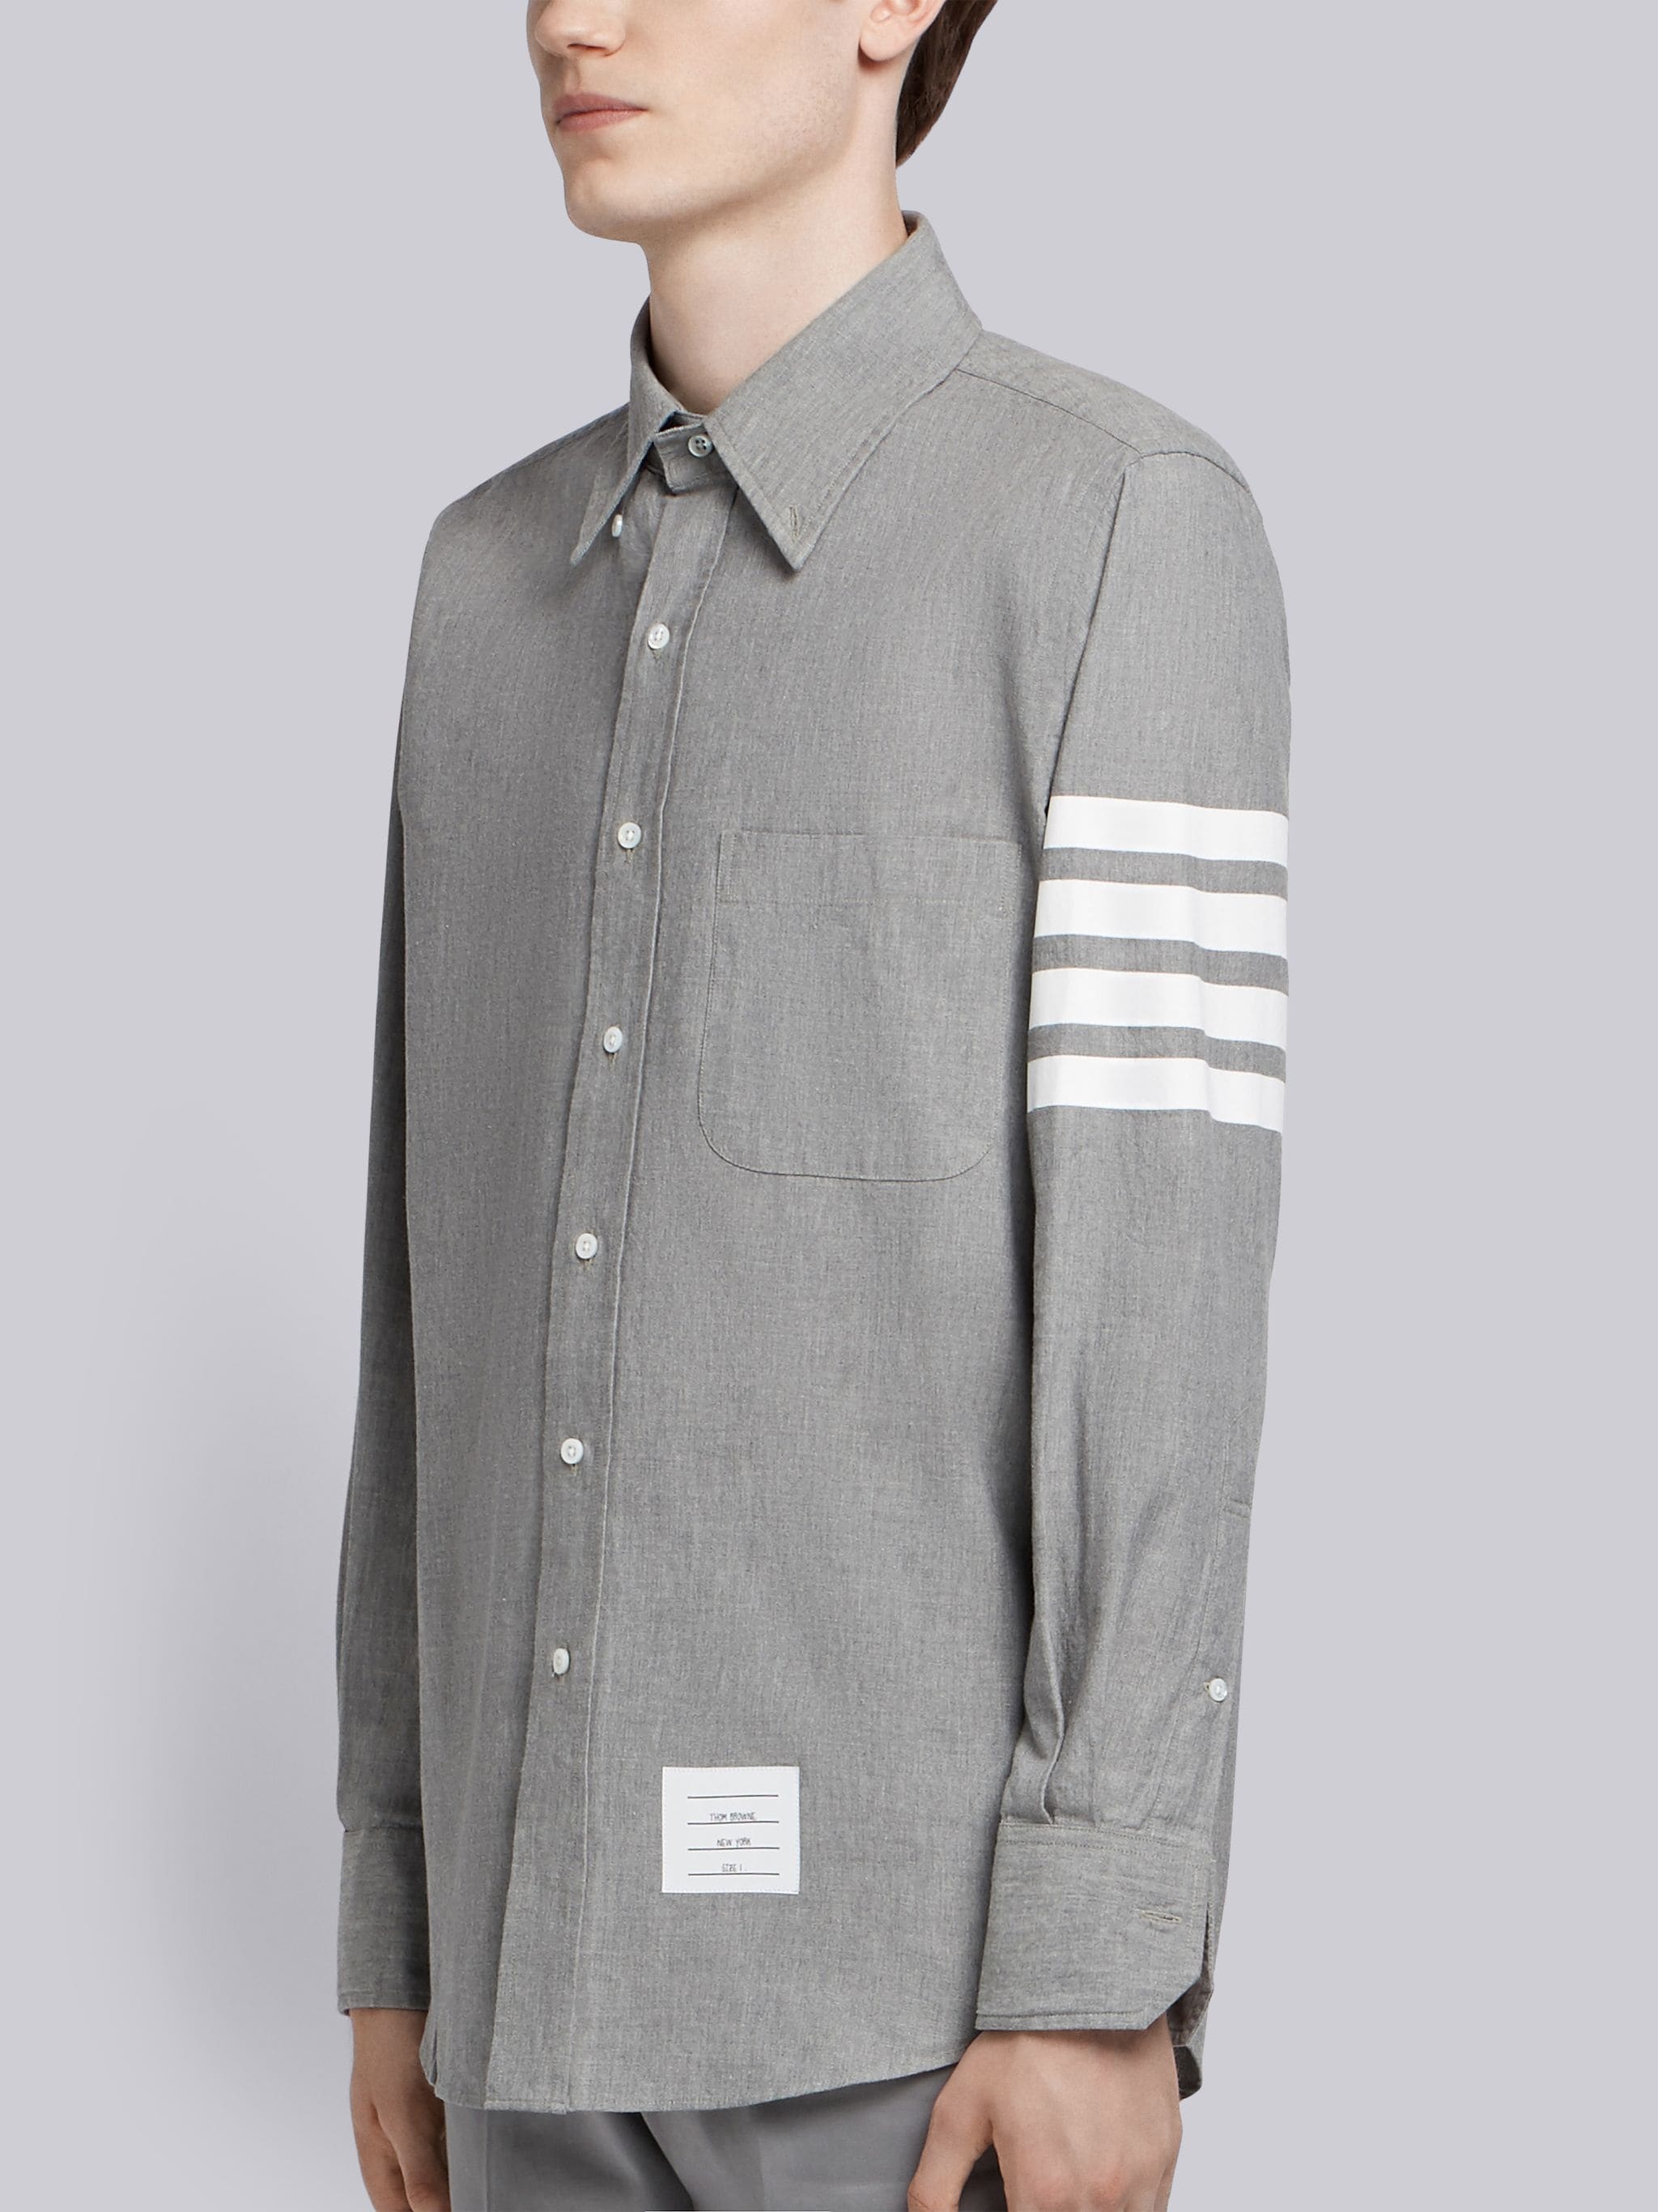 Medium Grey Chambray Printed 4-bar Nametag Straight Fit Shirt - 3